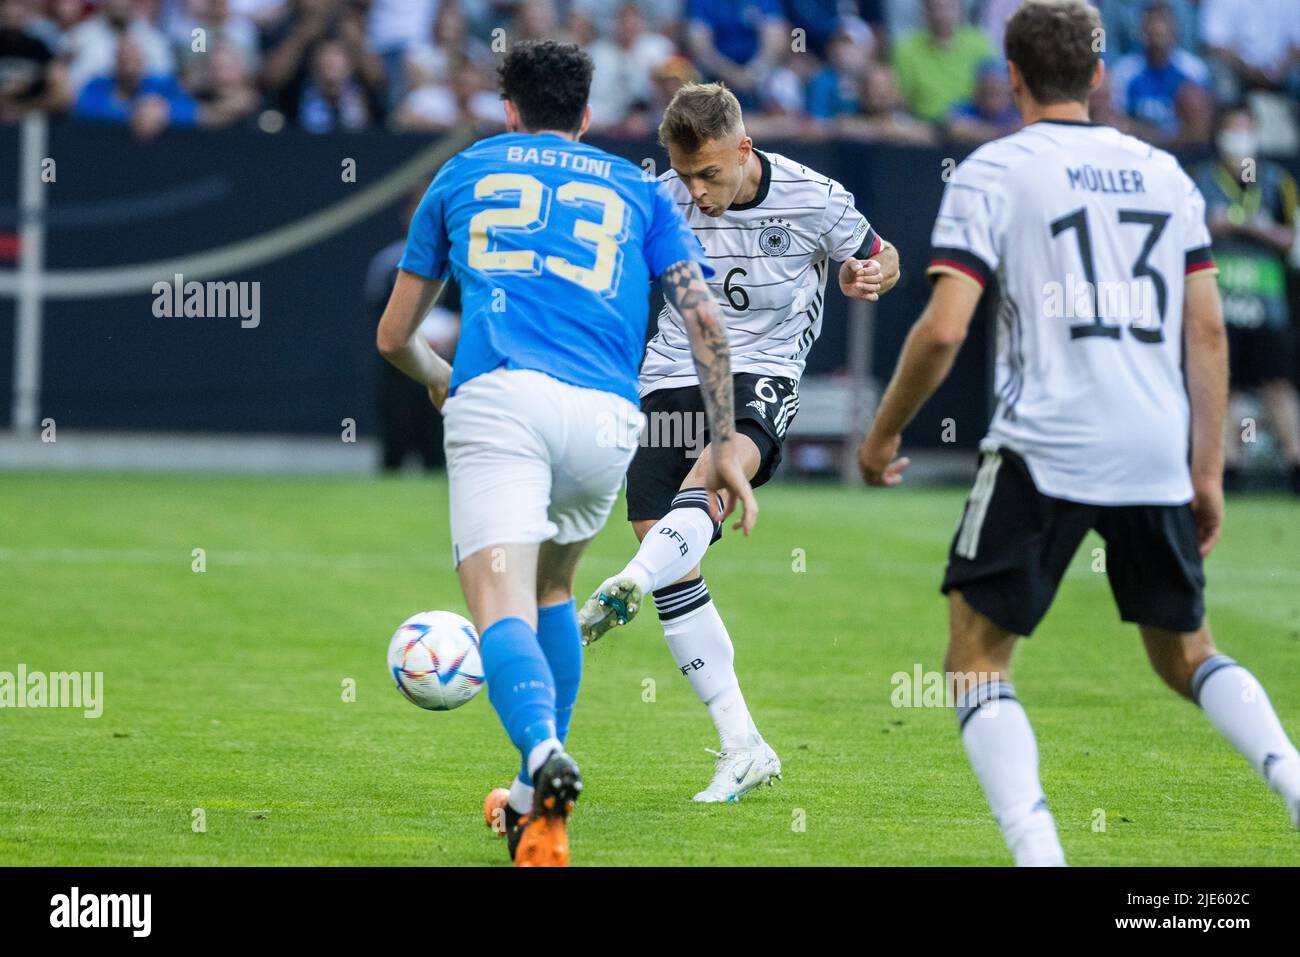 Mönchengladbach, Borussia-Park, 14.06.22: Joshua Kimmich (Deutschland) schiesst das 1:0 Tor und jubelt beim Länderspiel zwischen Deutschland vs. Itali Stock Photo